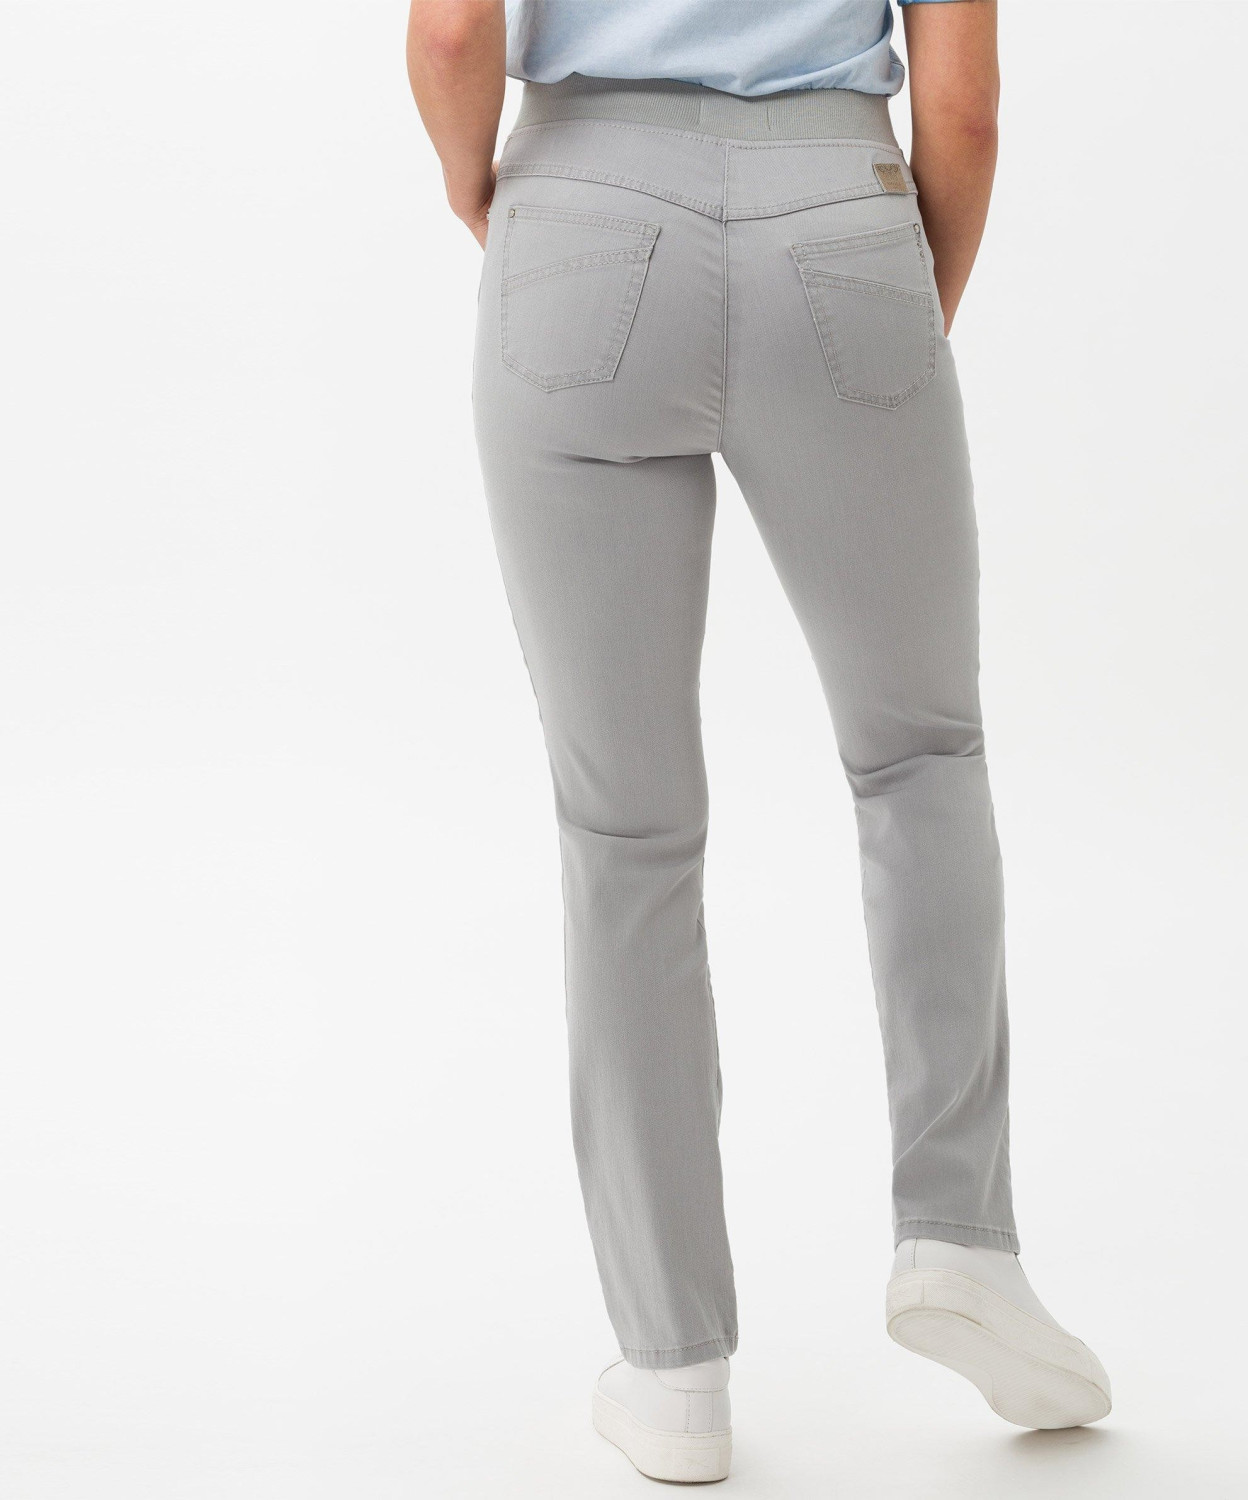 BRAX Raphaela Slim Pants 99,95 bei grey | € ab (19-6227) Pamina Preisvergleich Style light